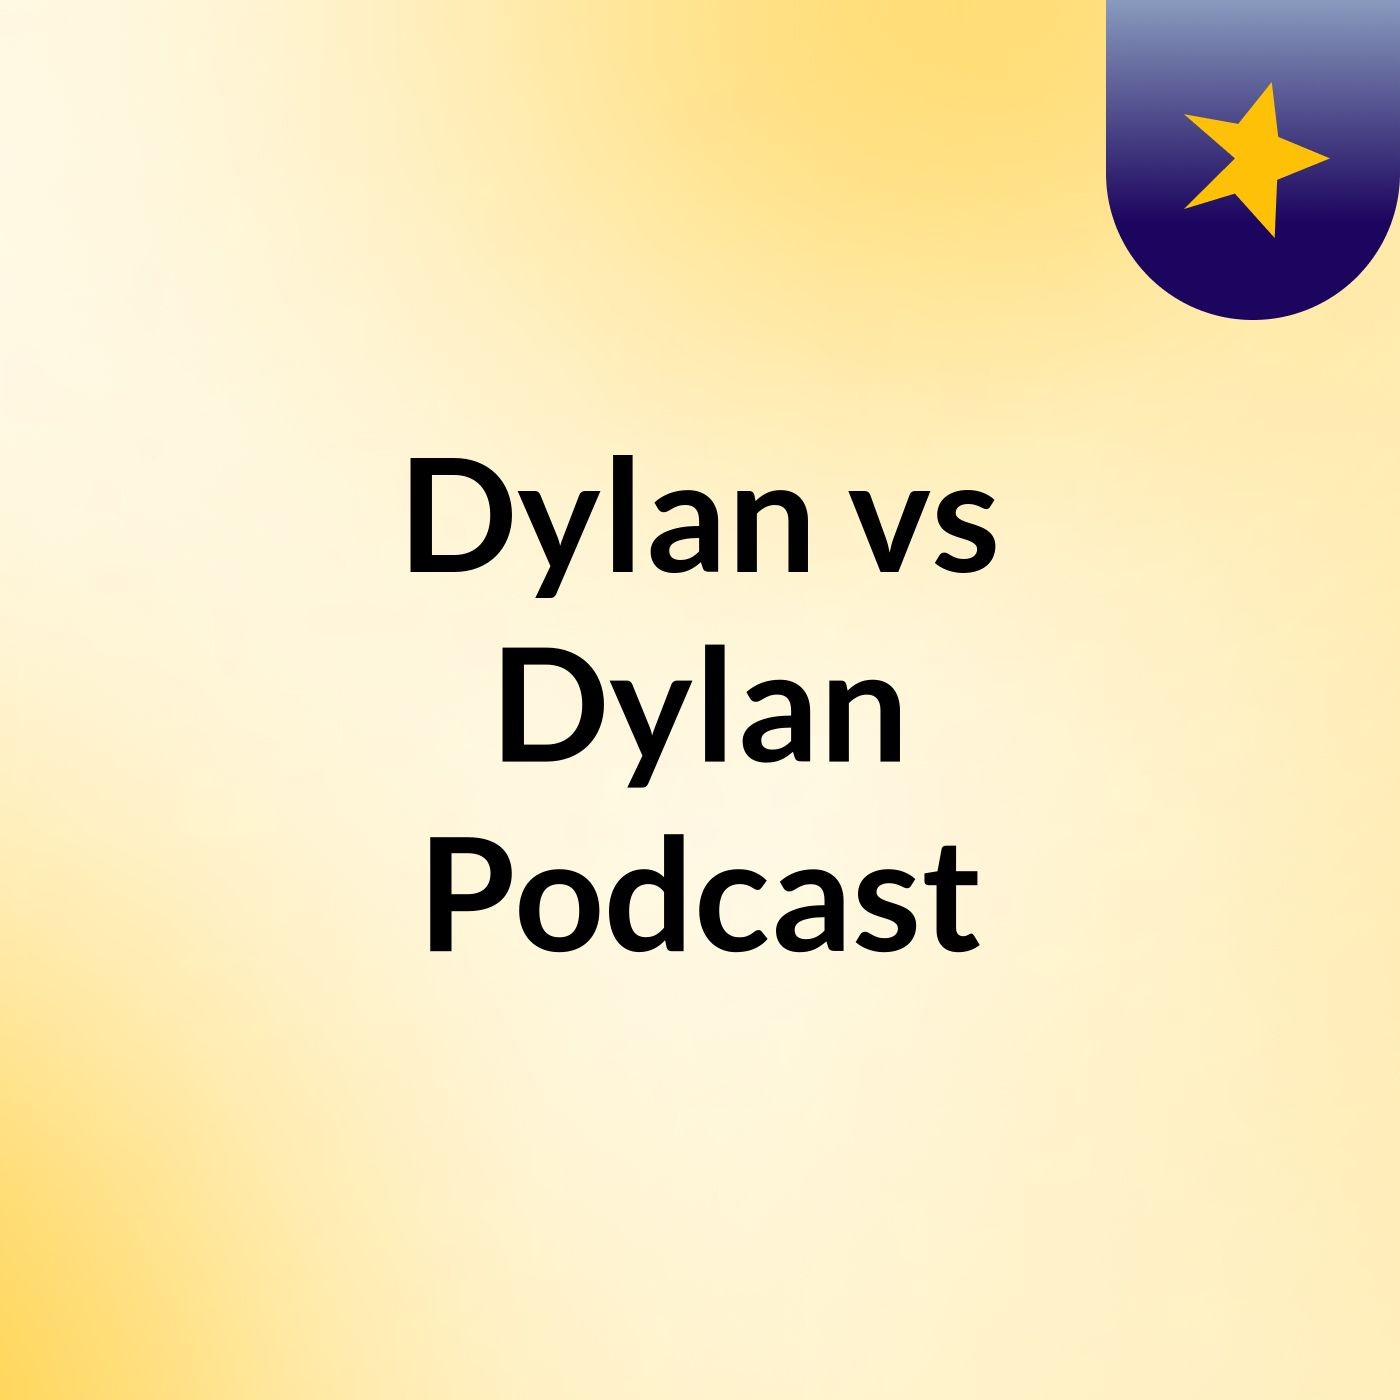 Dylan vs Dylan Podcast